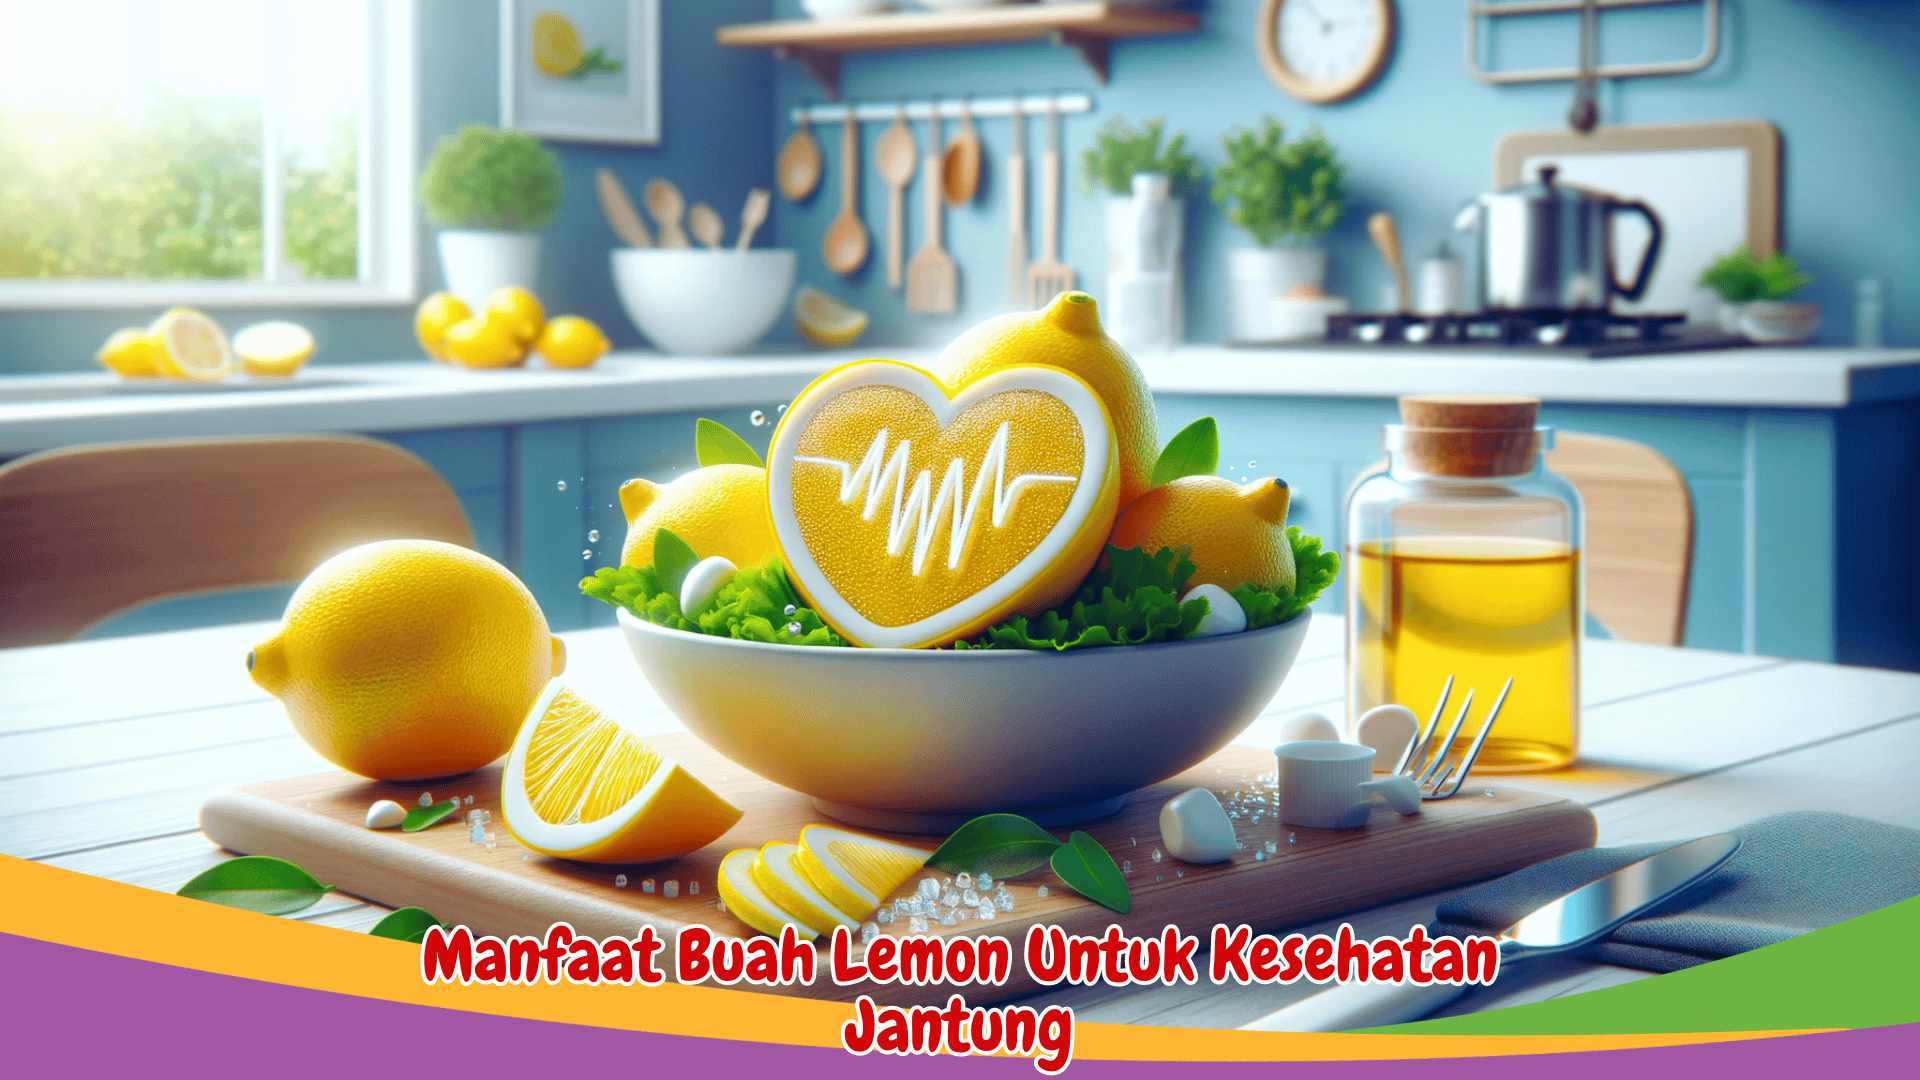 Manfaat Buah Lemon Untuk Kesehatan Jantung